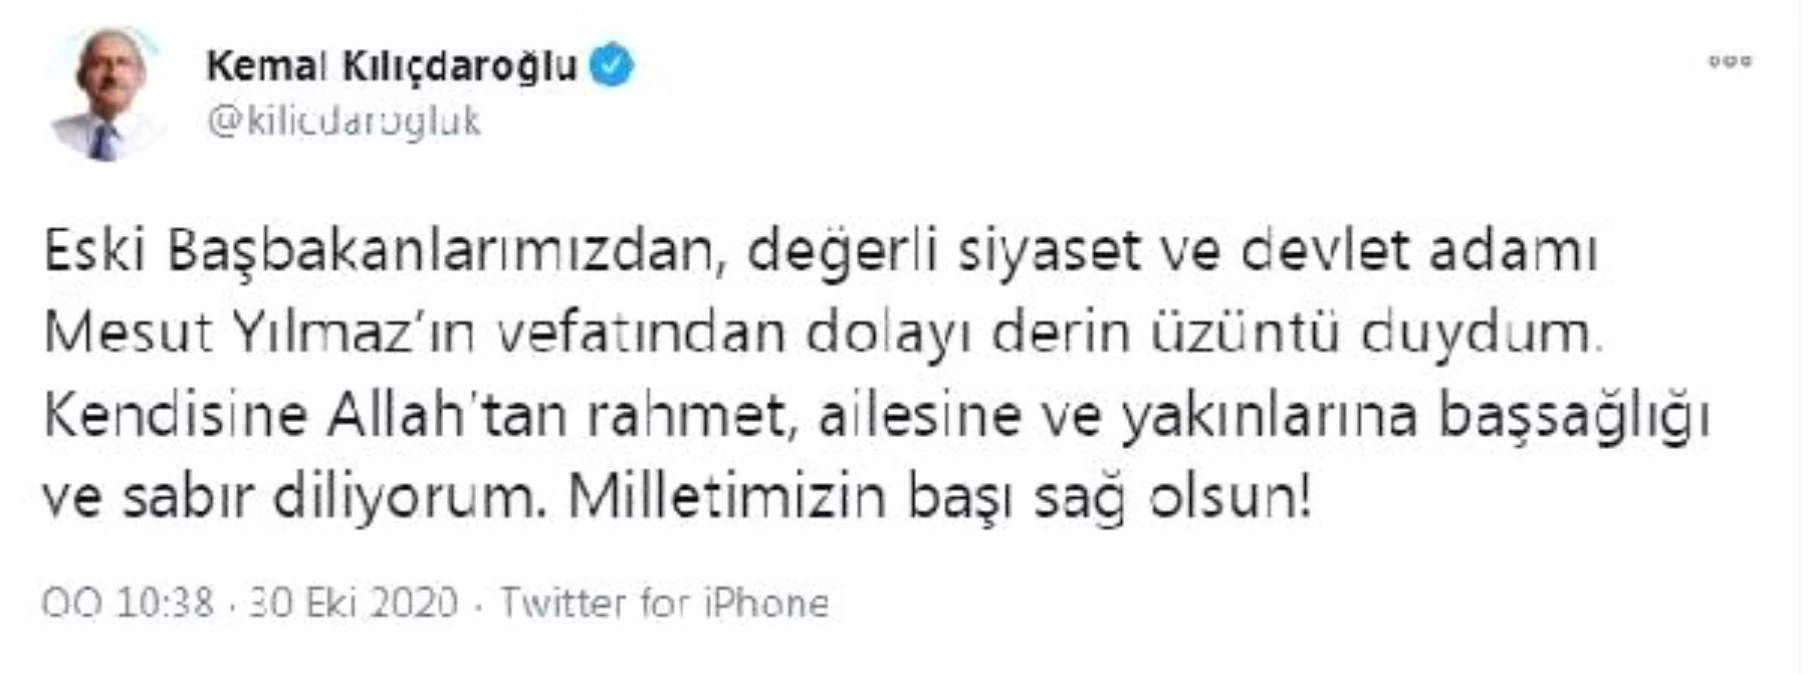 Kılıçdaroğlu\'ndan Mesut Yılmaz için başsağlığı mesajı